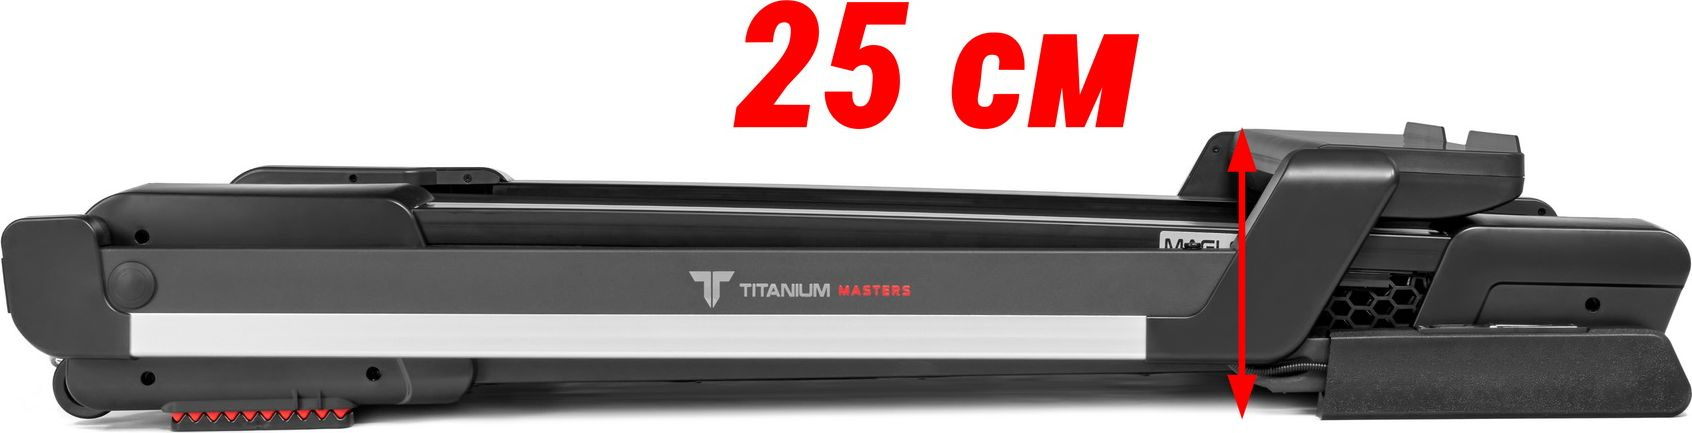 Titanium Masters Maglev M220 длина тренажера, см - 135